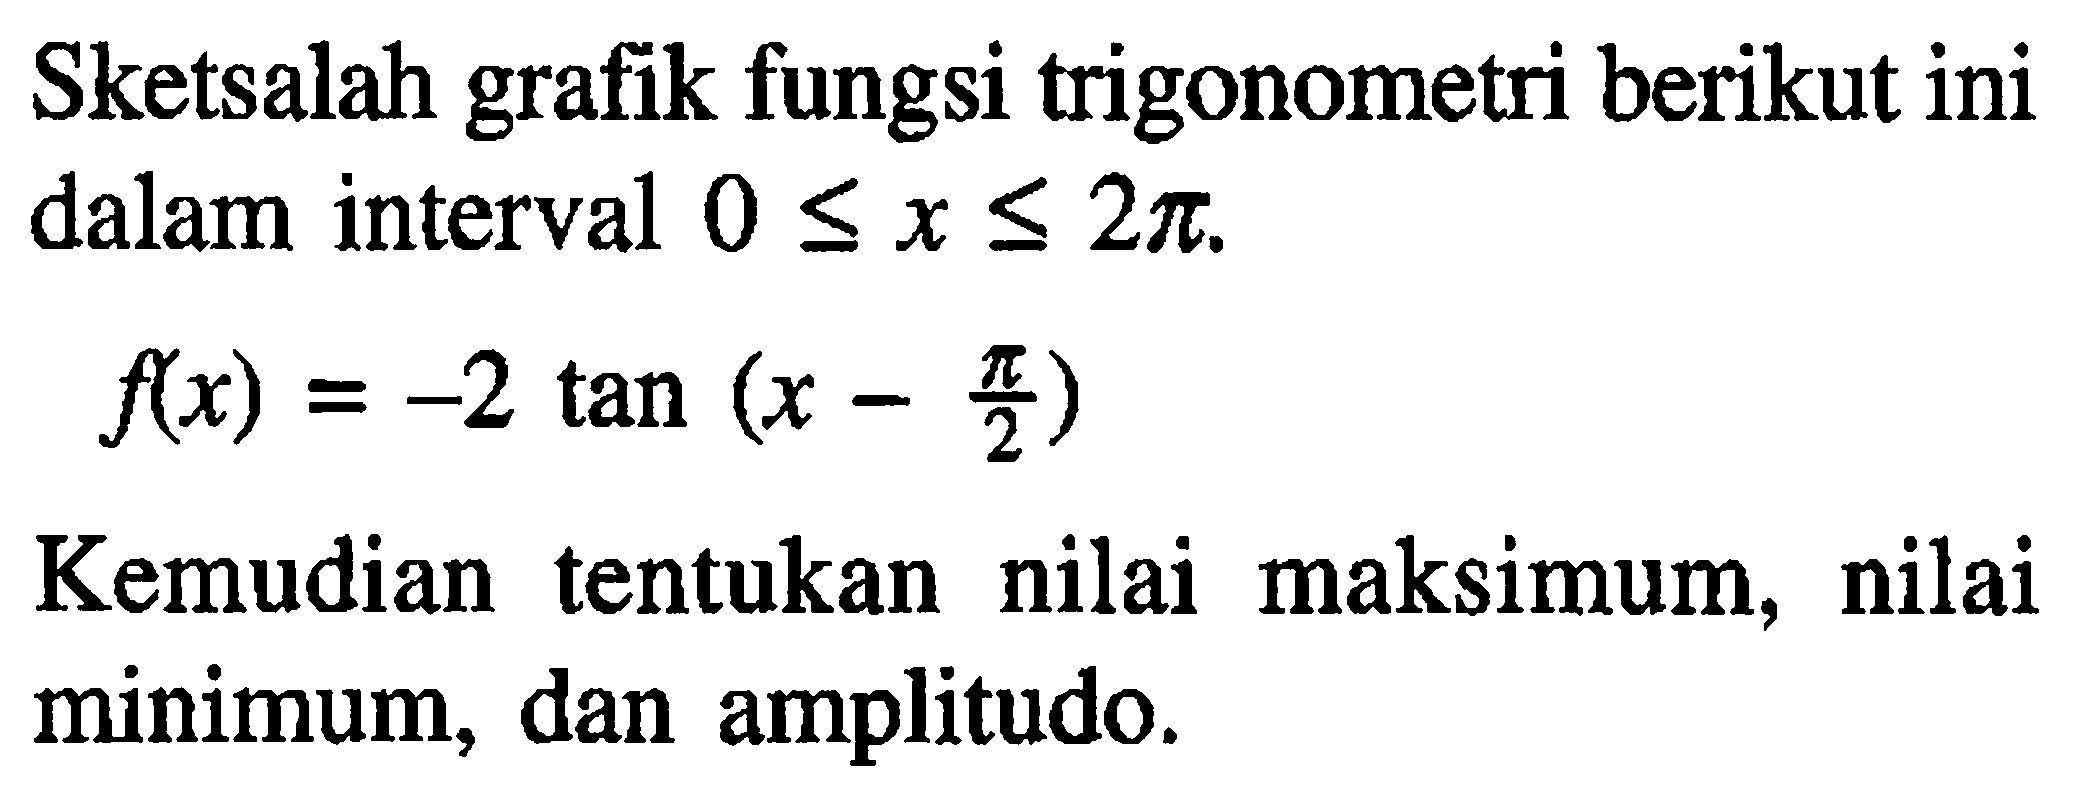 Sketsalah grafik fungsi trigonometri berikut ini dalam interval 0<=x<=2pi. f(x) = -2 tan(x-pi/2) Kemudian tentukan nilai maksimum, nilai minimum, dan amplitudo.